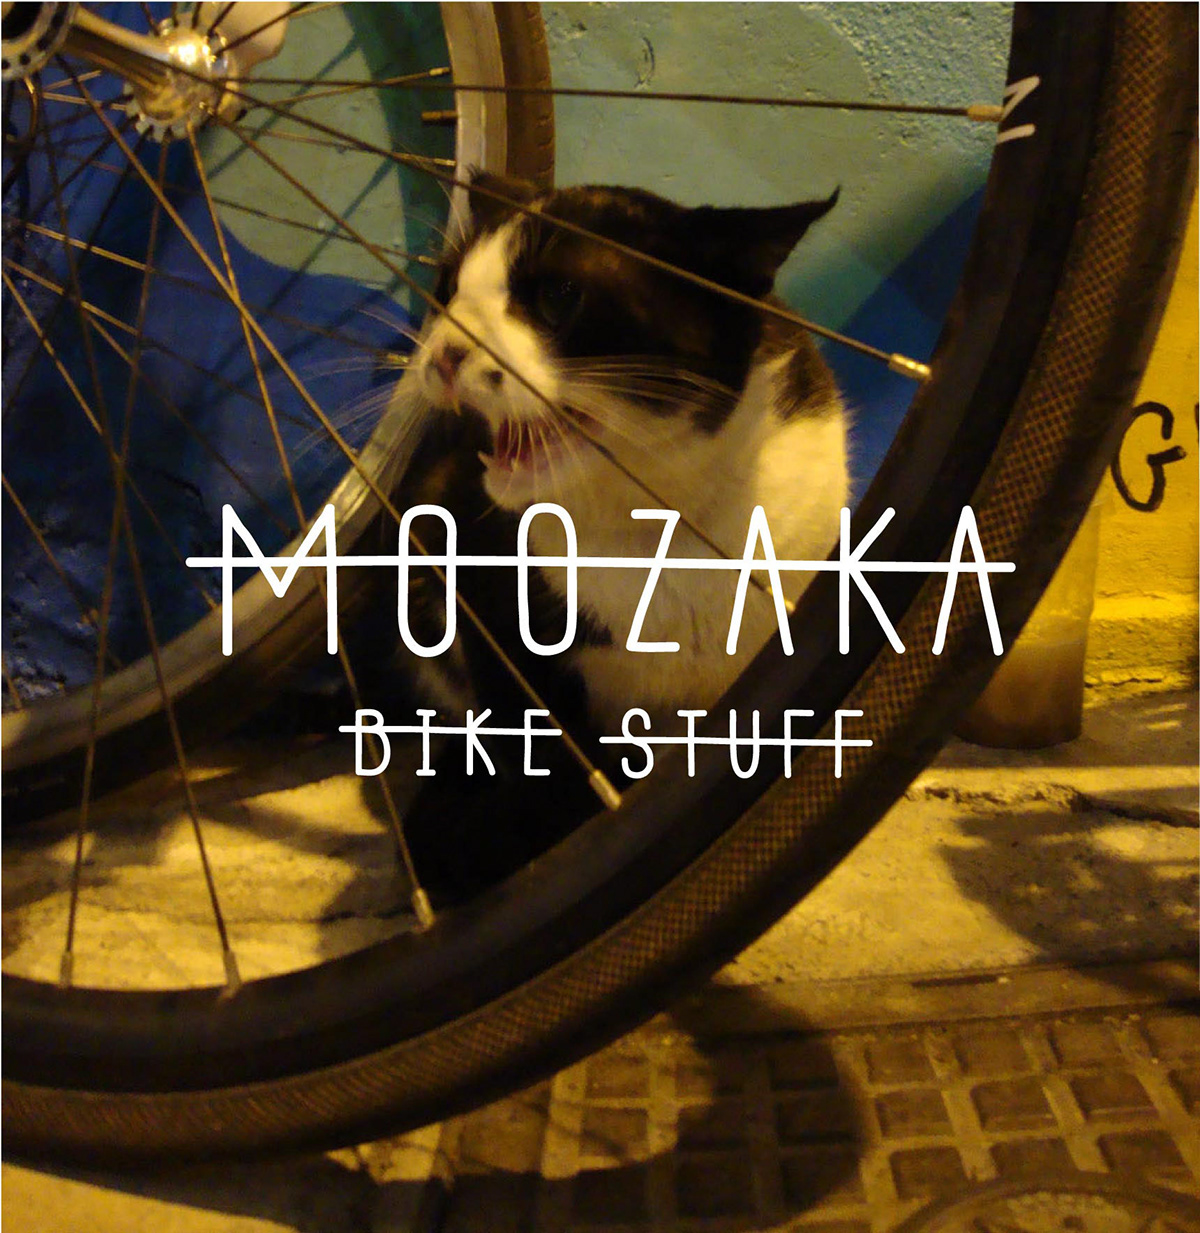 identity mzk moozaka Bike ride bike stuff Cycling